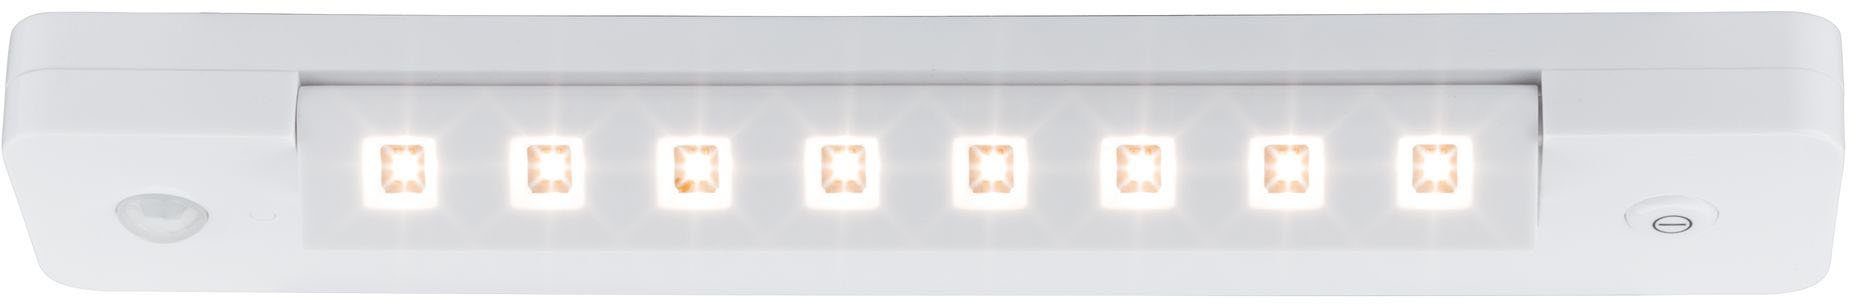 Lichtleiste, Schalter LED Warmweiß, fest LED An/Aus/Dimmen&Bewegungsmelder integriert, Paulmann LEDSmartLightbatteriebetrieben+